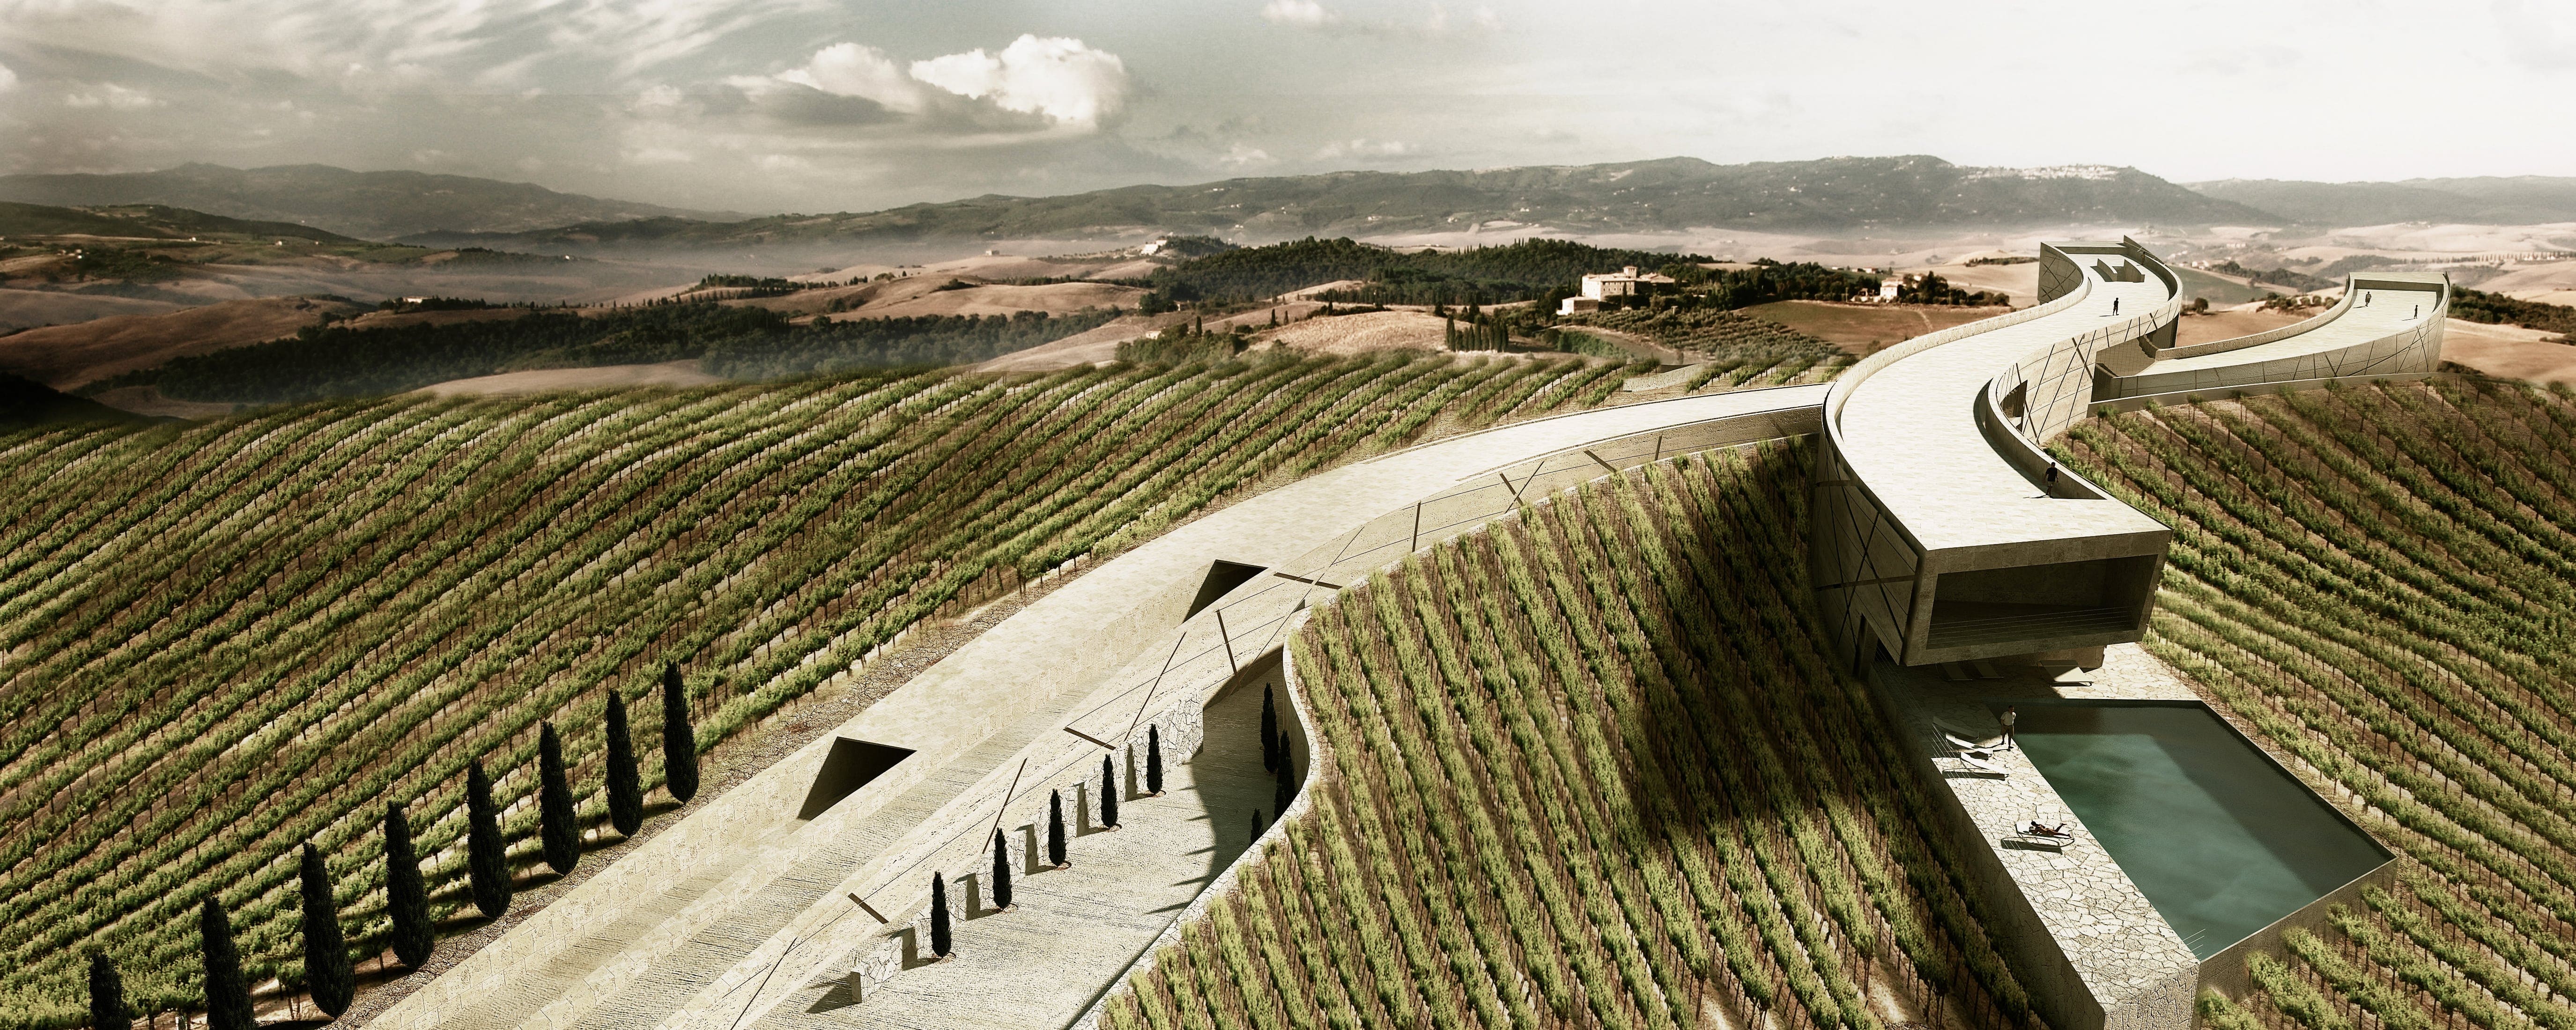 Widok z lotu ptaka na Winnice zlokalizowaną w Montalcino